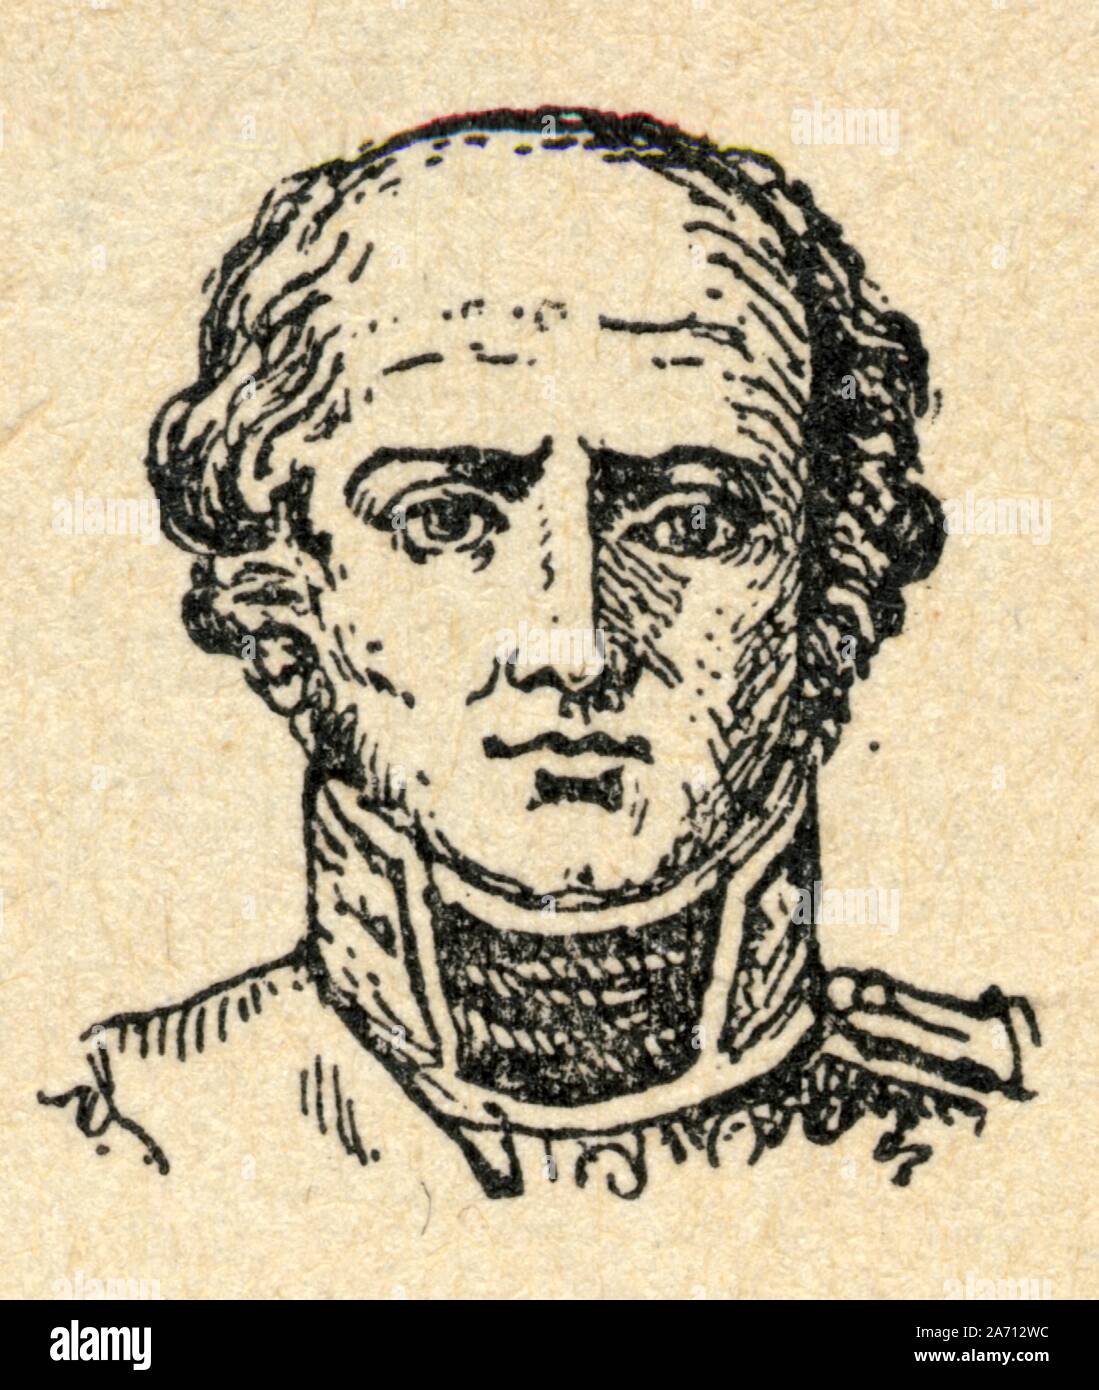 Louis Nicolas d’Avout puis Davout, duc d'Auerstaedt, prince d'Eckmühl, né le 10 mai 1770 à Annoux dans l'Yonne et mort le 1ᵉʳ juin 1823 à Paris, est u Stock Photo